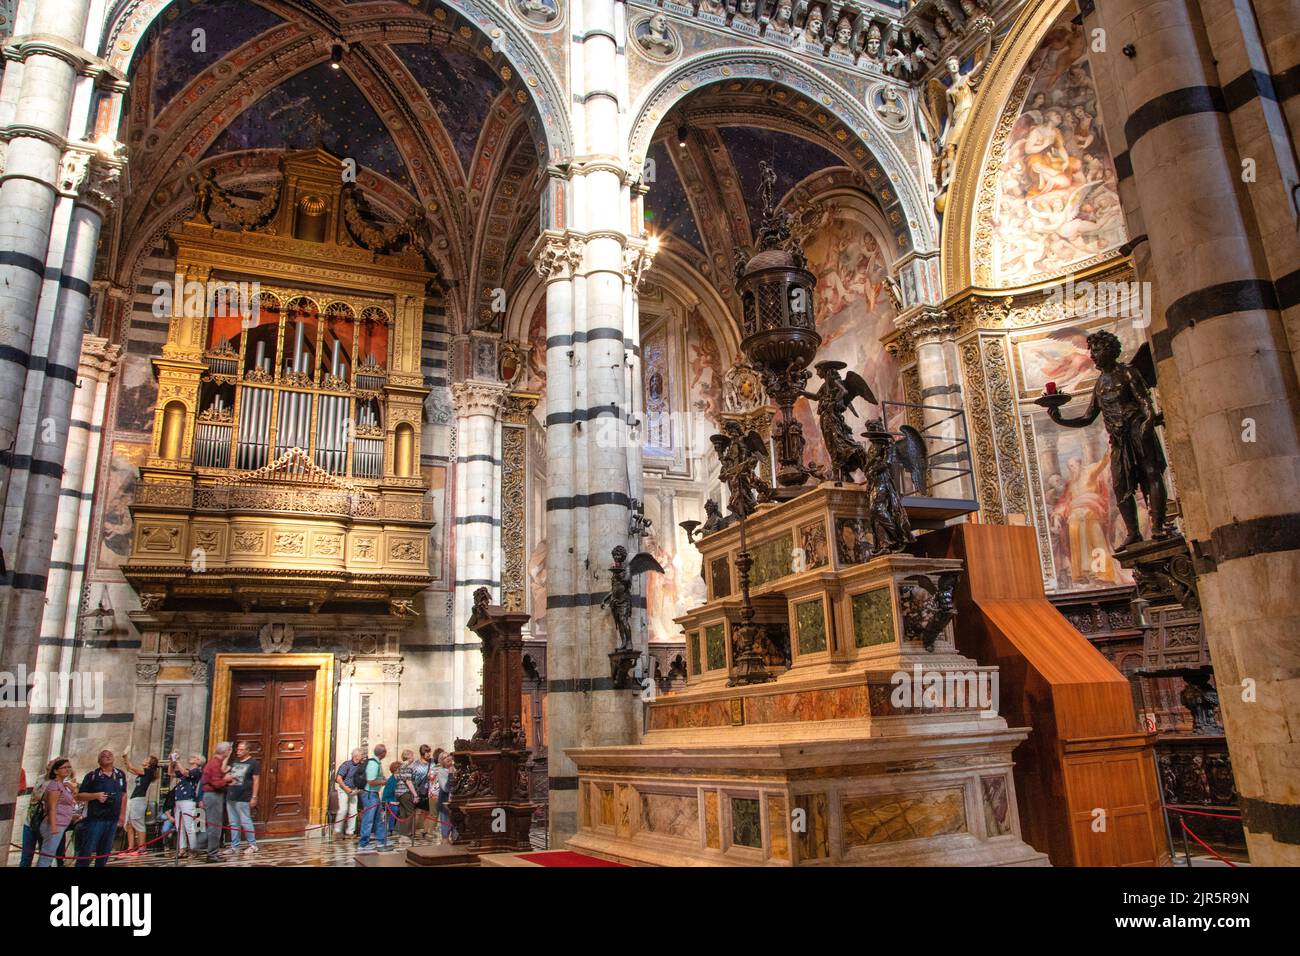 Der Sienna Kathedrale oder die Kathedrale Santa Maria Assunta in Siena, Italien. Stockfoto